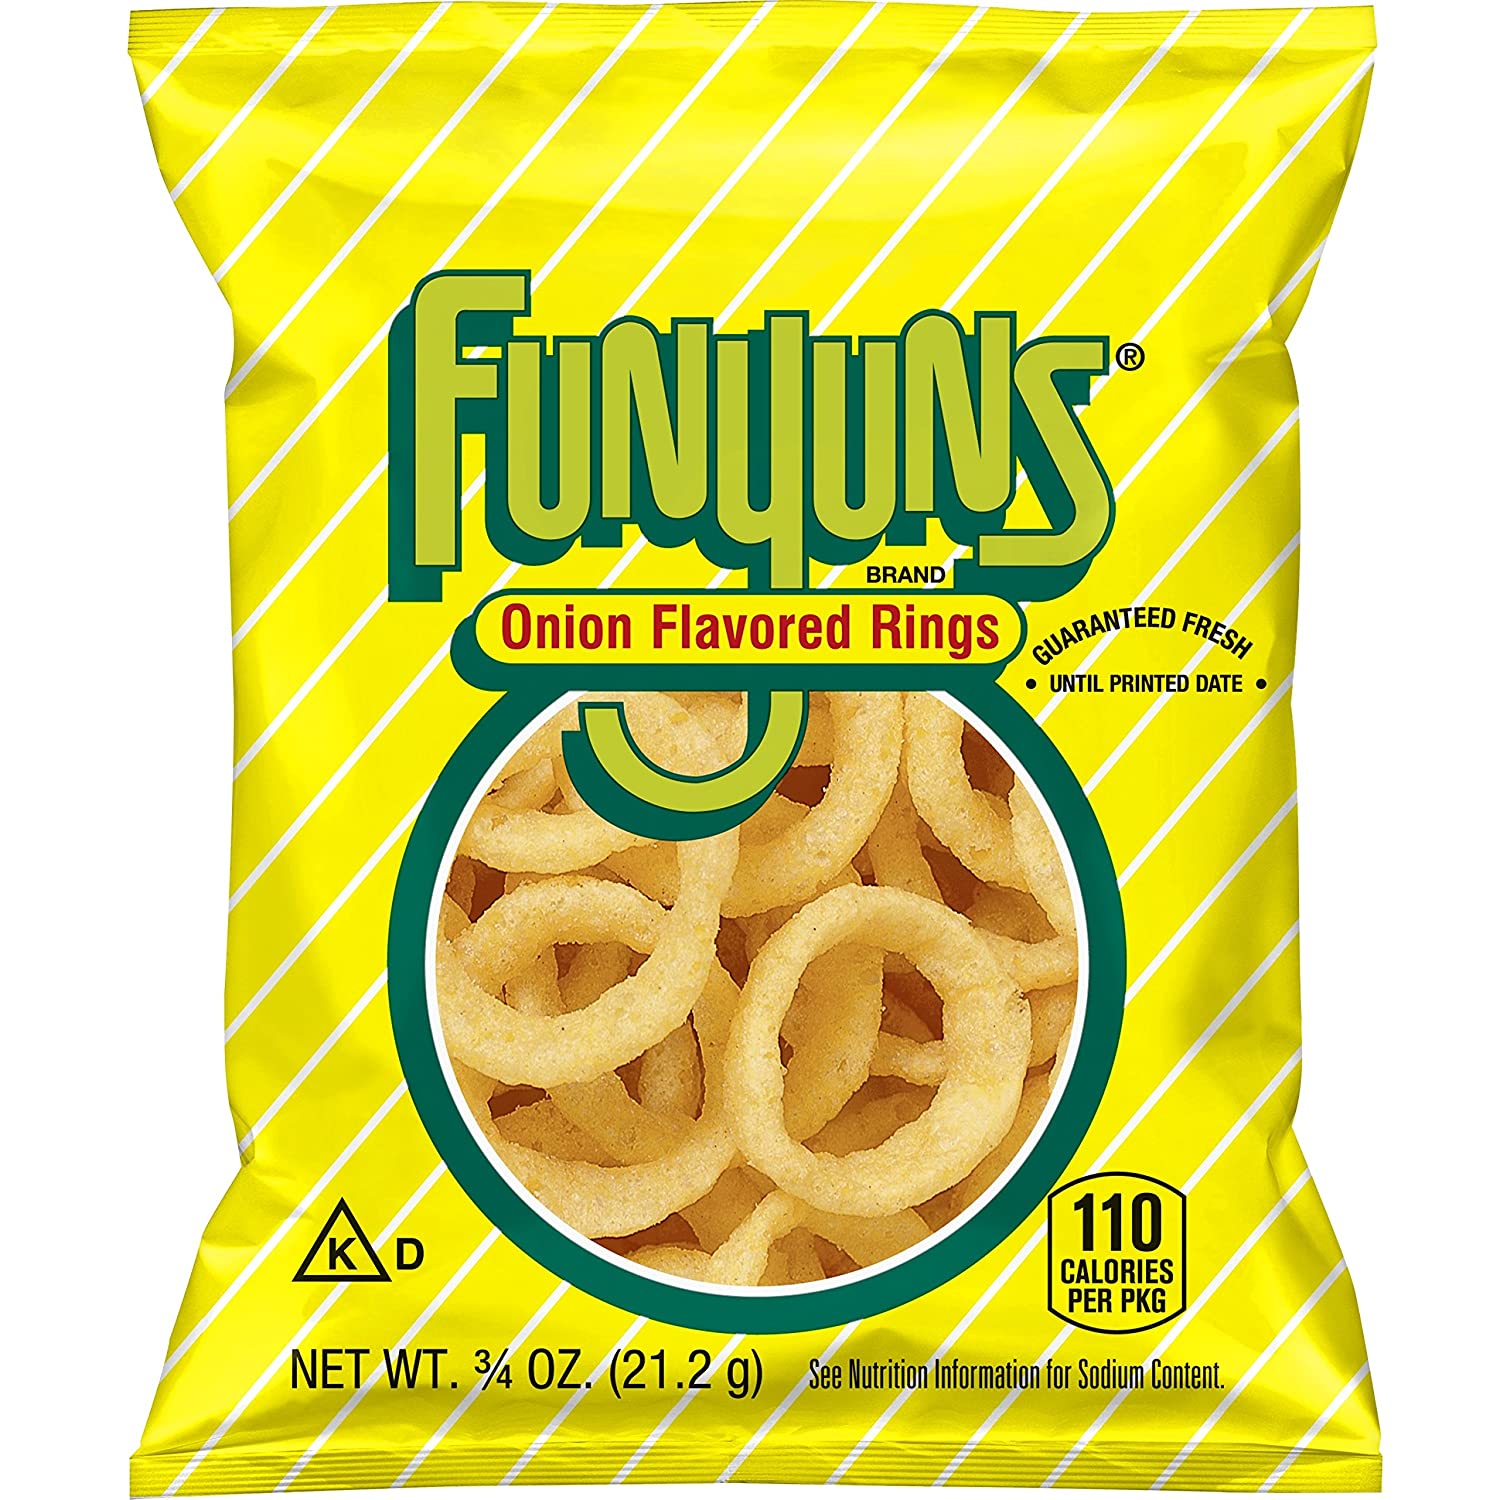 Un emballage jaune avec des rayures blanches sur fond blanc avec au centre une partie transparente qui dévoile des chips orange en forme de fines auréoles